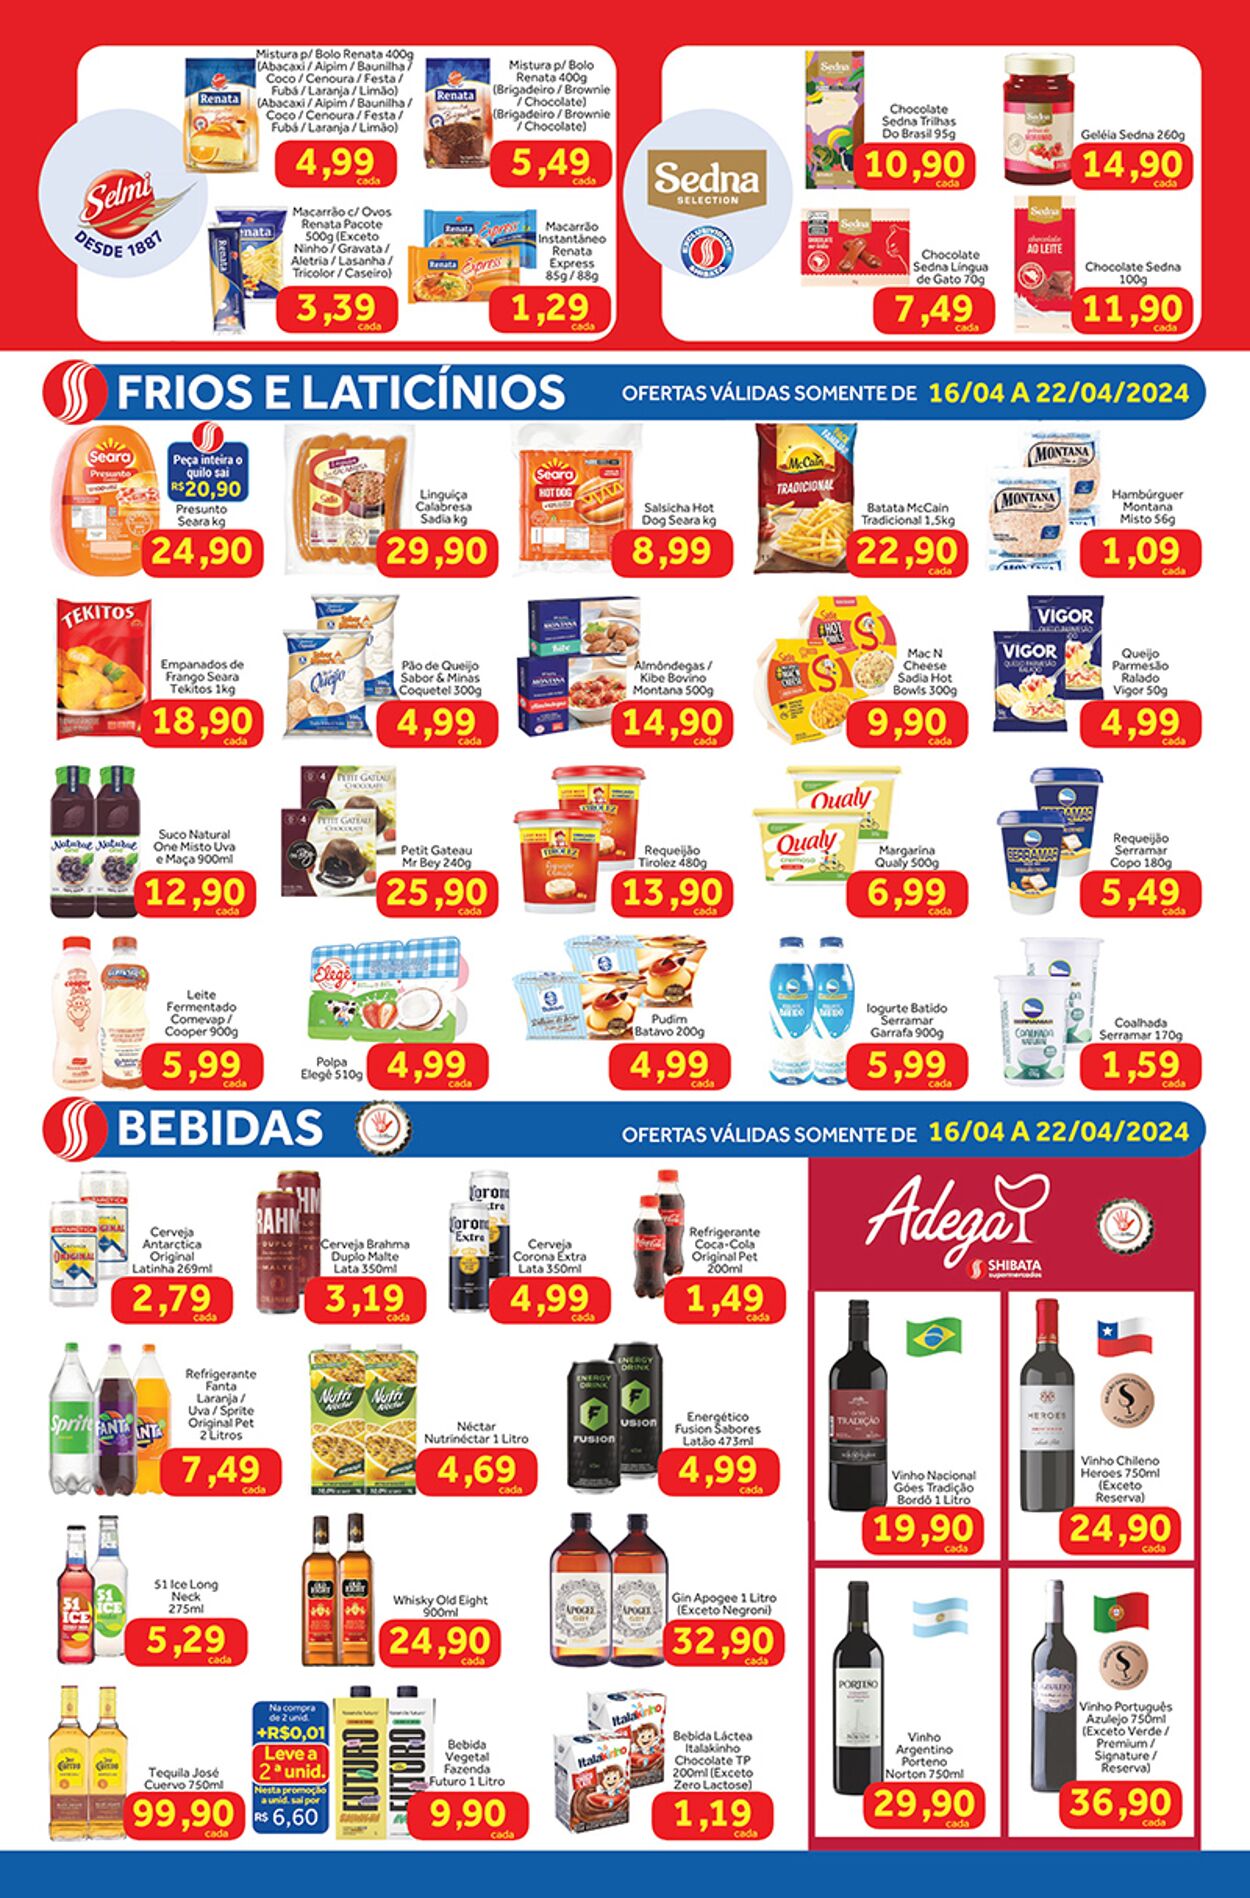 Folheto Shibata Supermercados 16.04.2024 - 22.04.2024